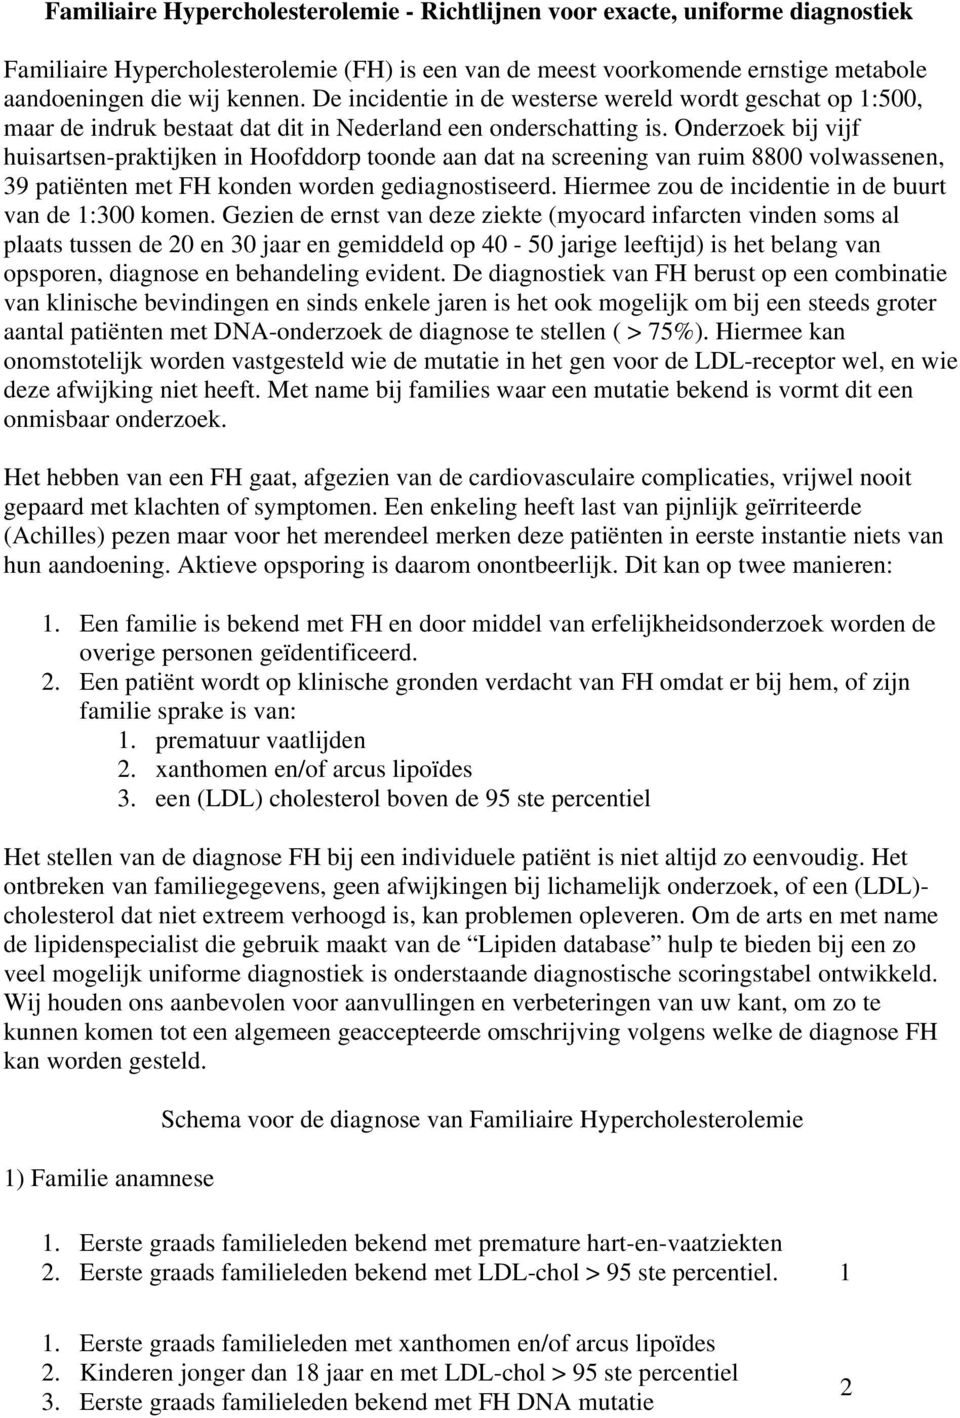 Onderzoek bij vijf huisartsen-praktijken in Hoofddorp toonde aan dat na screening van ruim 8800 volwassenen, 39 patiënten met FH konden worden gediagnostiseerd.